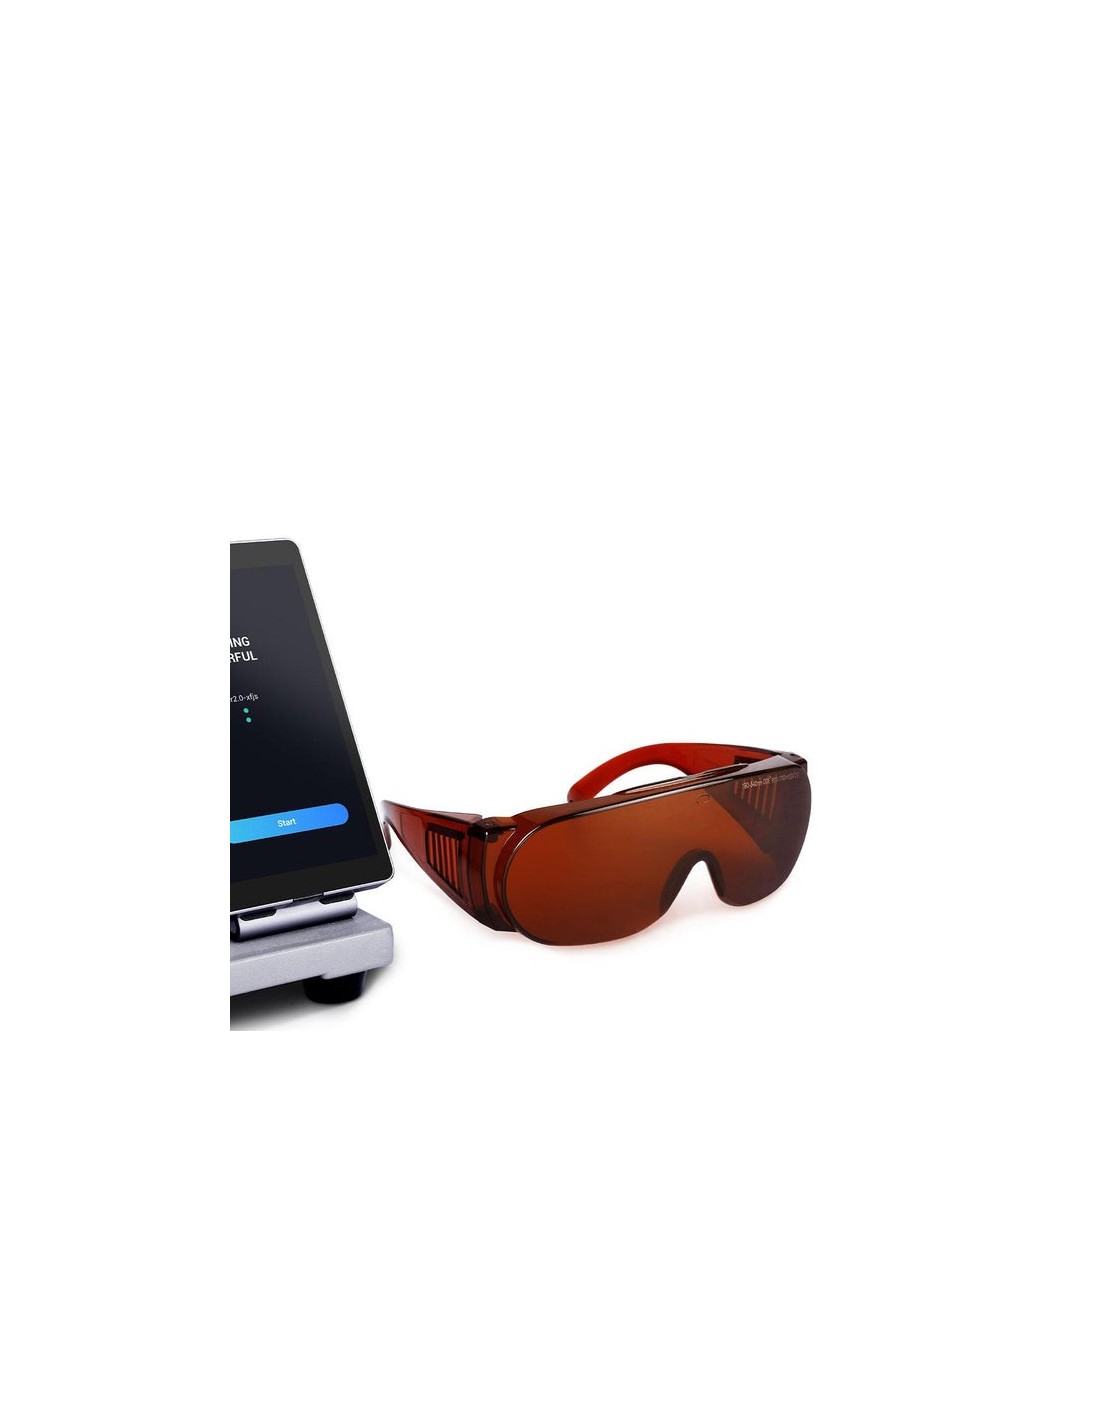 Snapmaker Laser sikkerhedsbriller